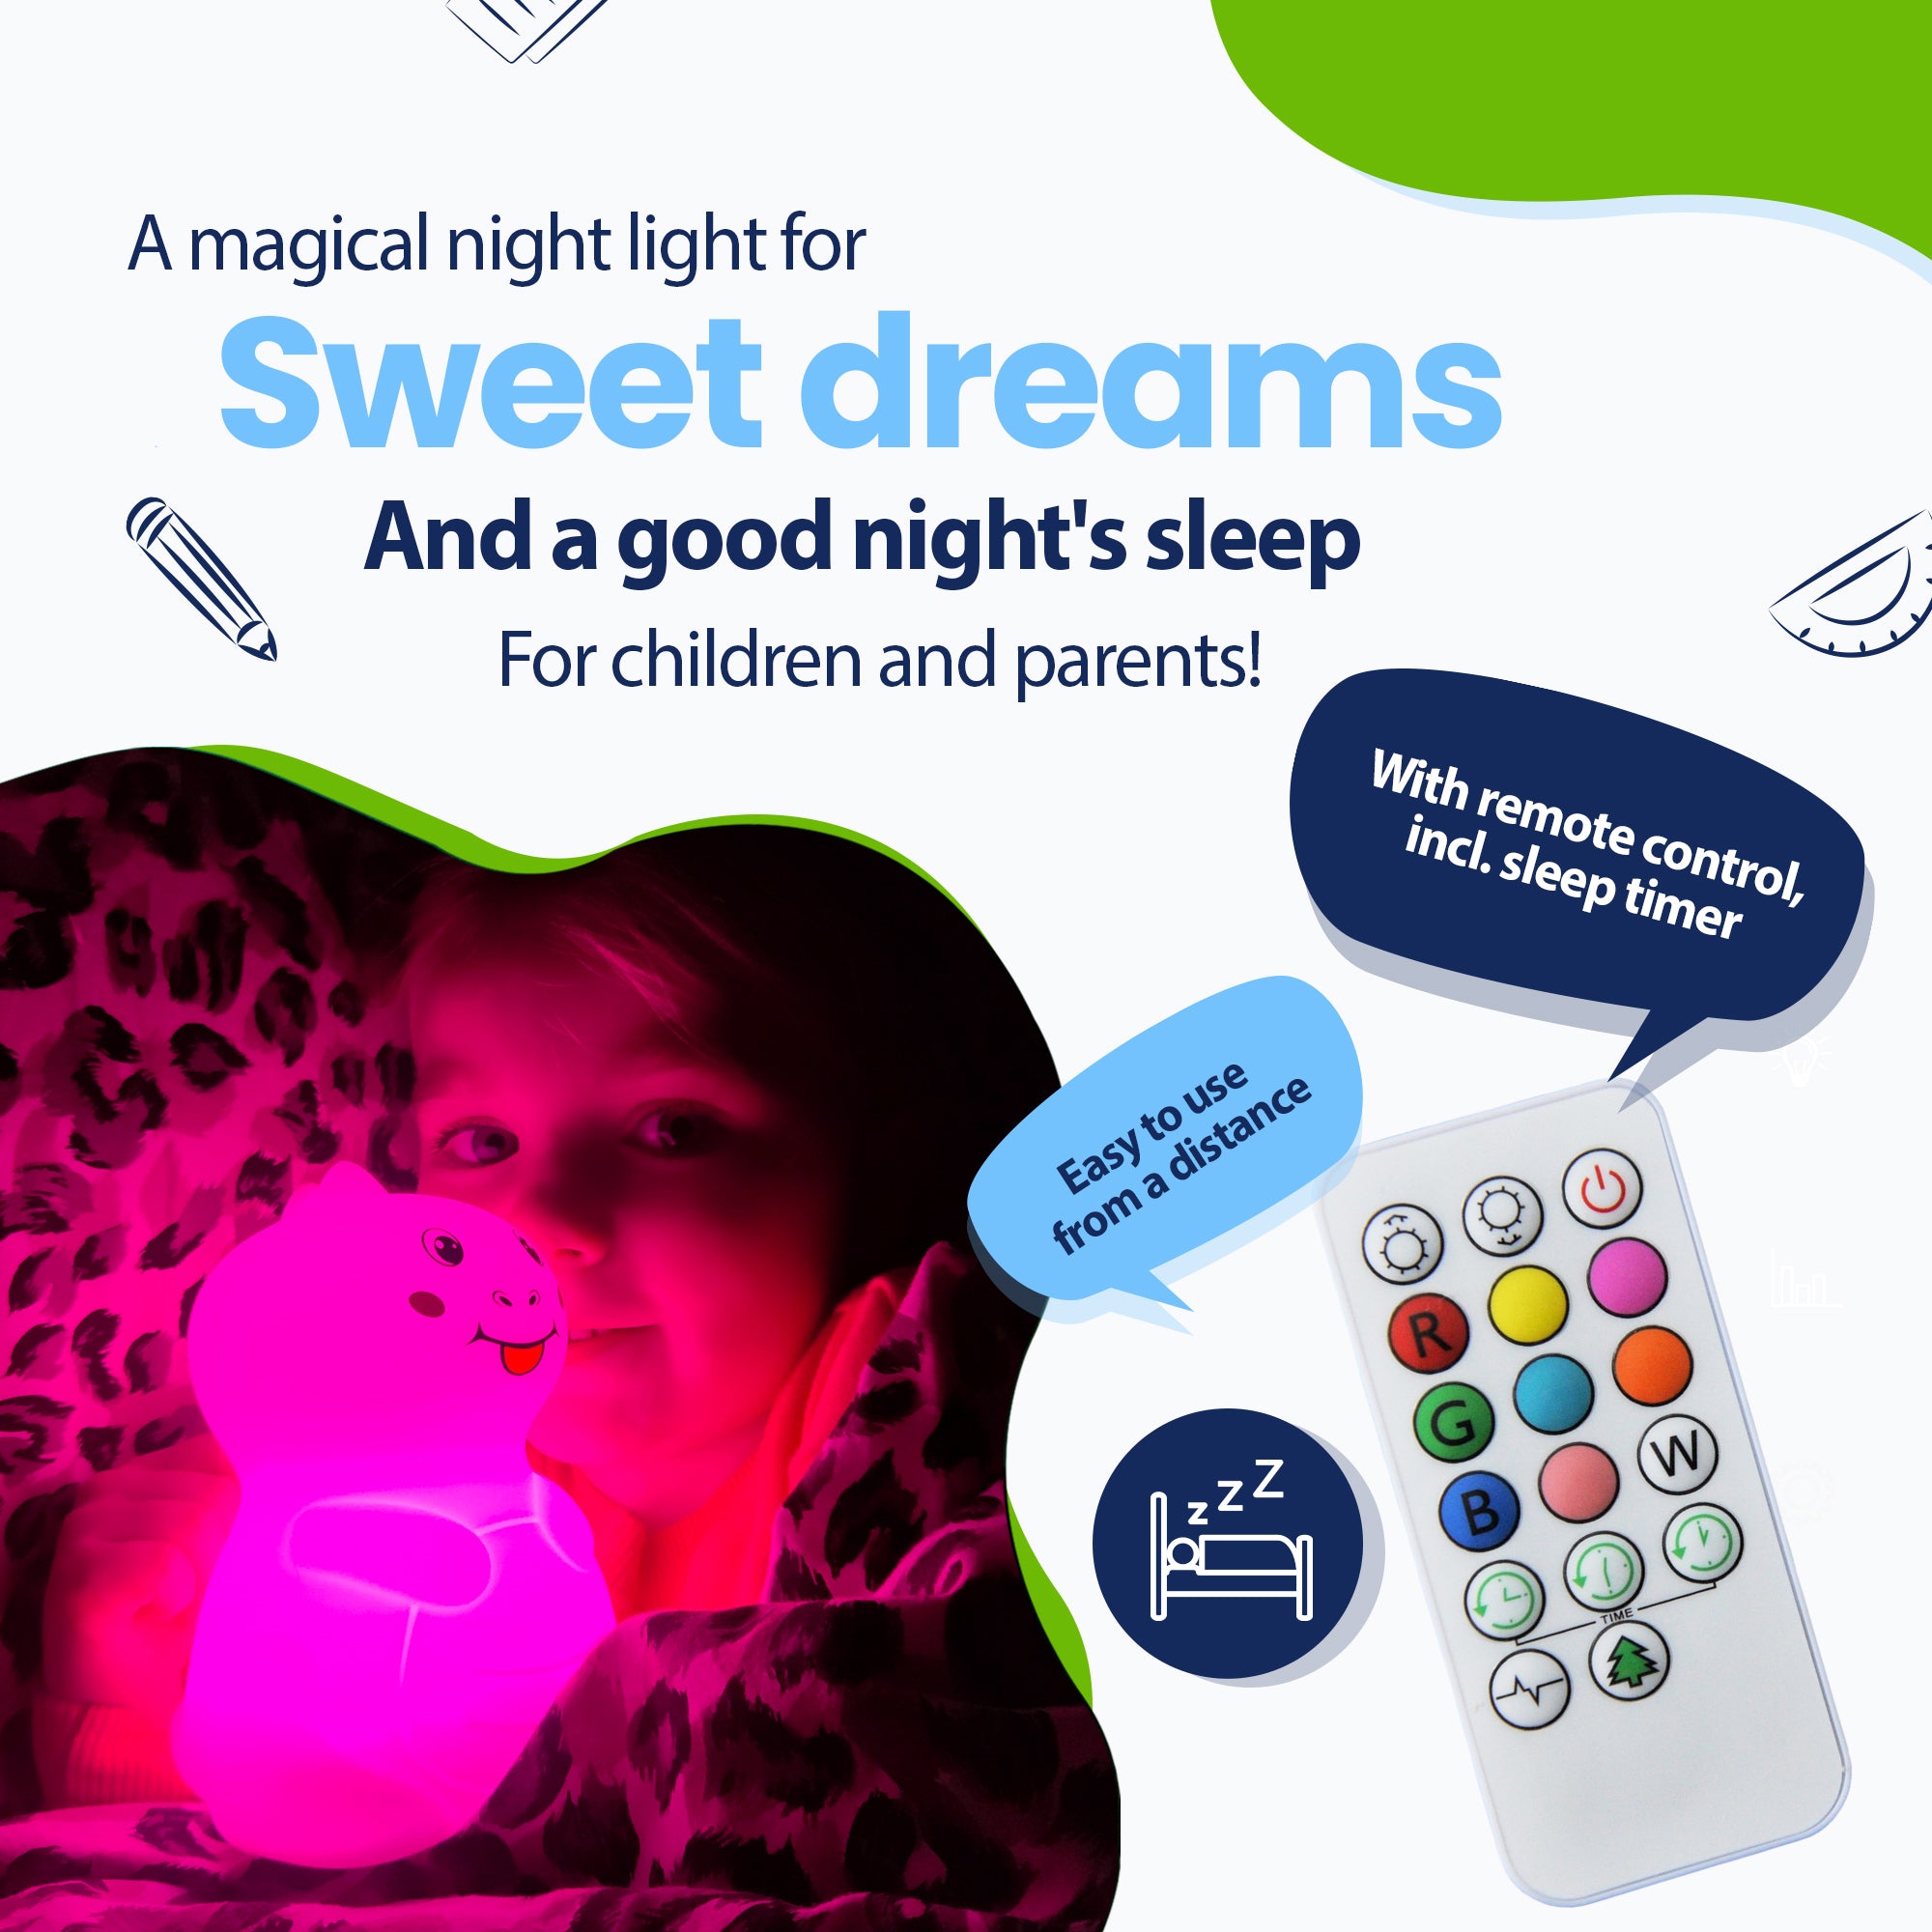 Una luz nocturna mágica para sueños placenteros y un sueño reparador para niños y padres, con control remoto que incluye temporizador para dormir, fácilmente a distancia